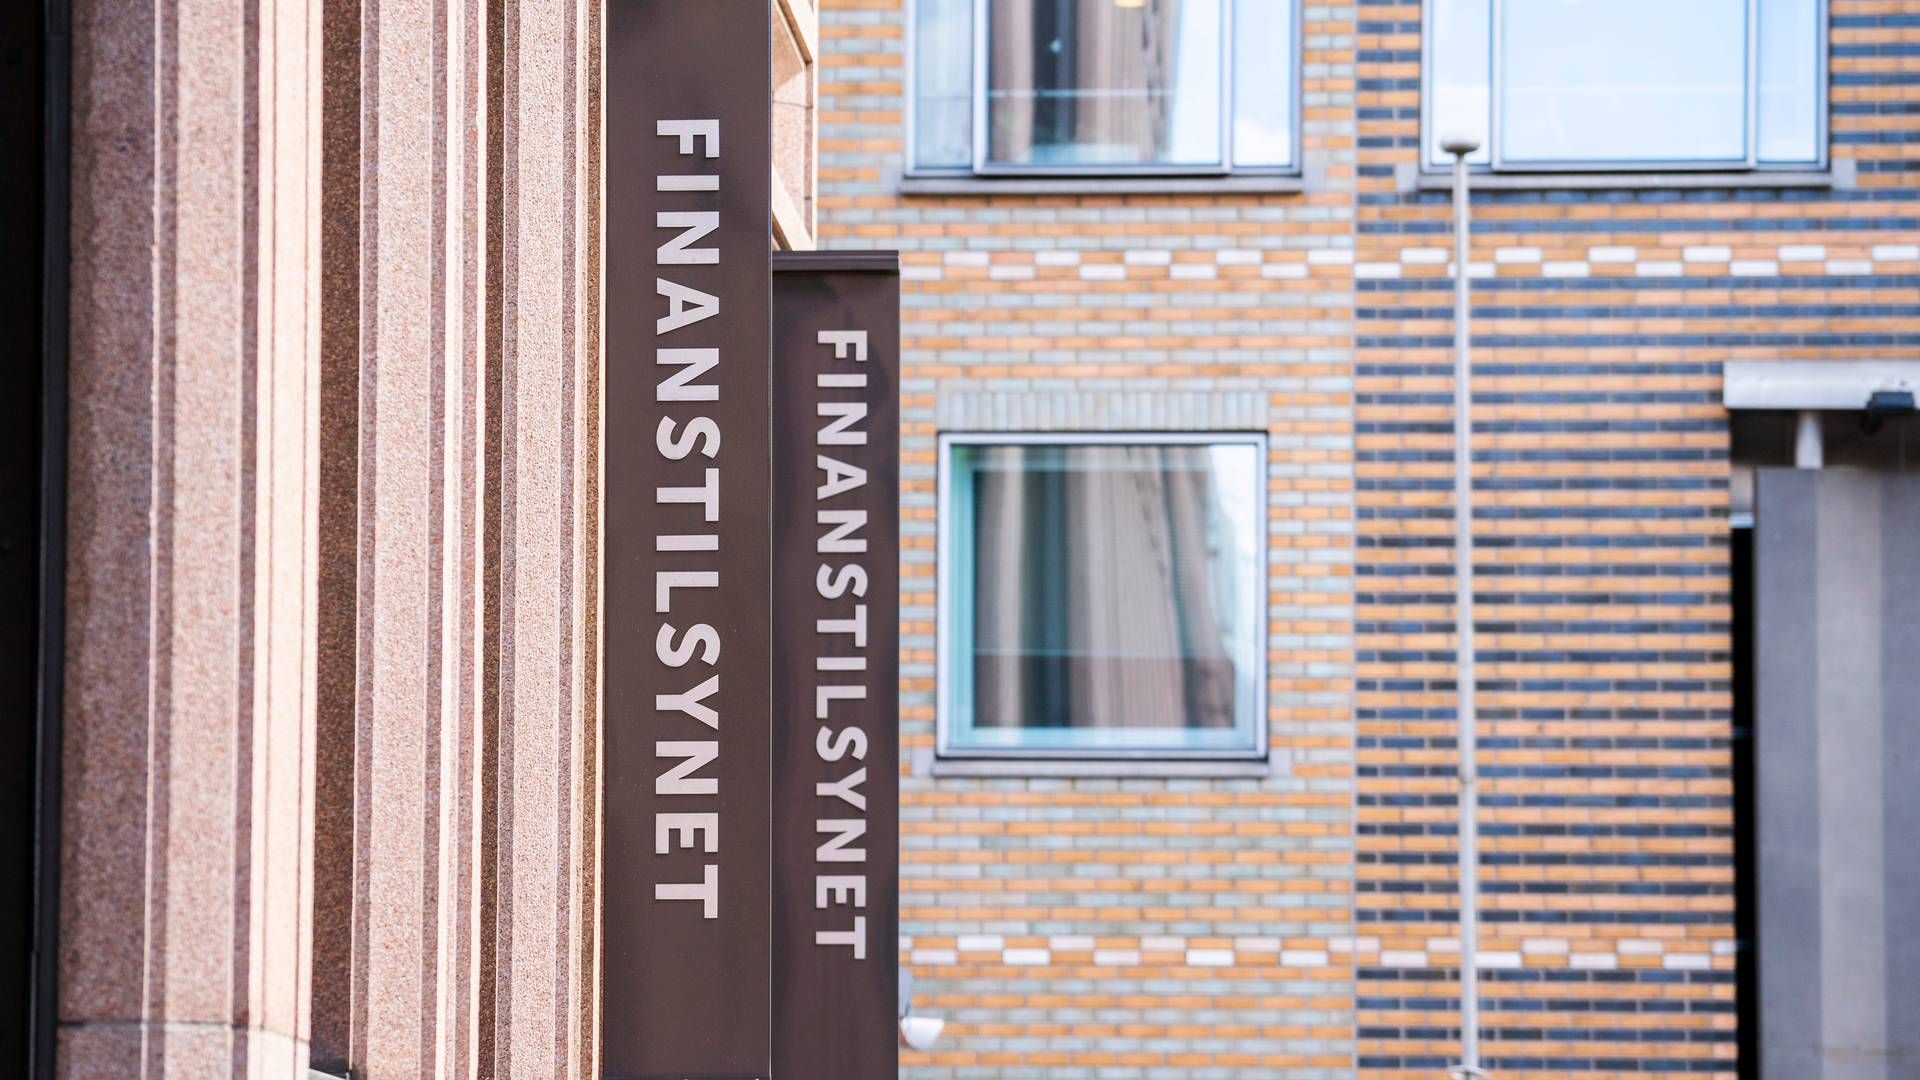 FLERE REGLER: Finanstilsynet anbefaler at man setter seg godt inn i reglene når det kommer til investeringsanbefalinger. | Foto: Håkon Mosvold Larsen / NTB